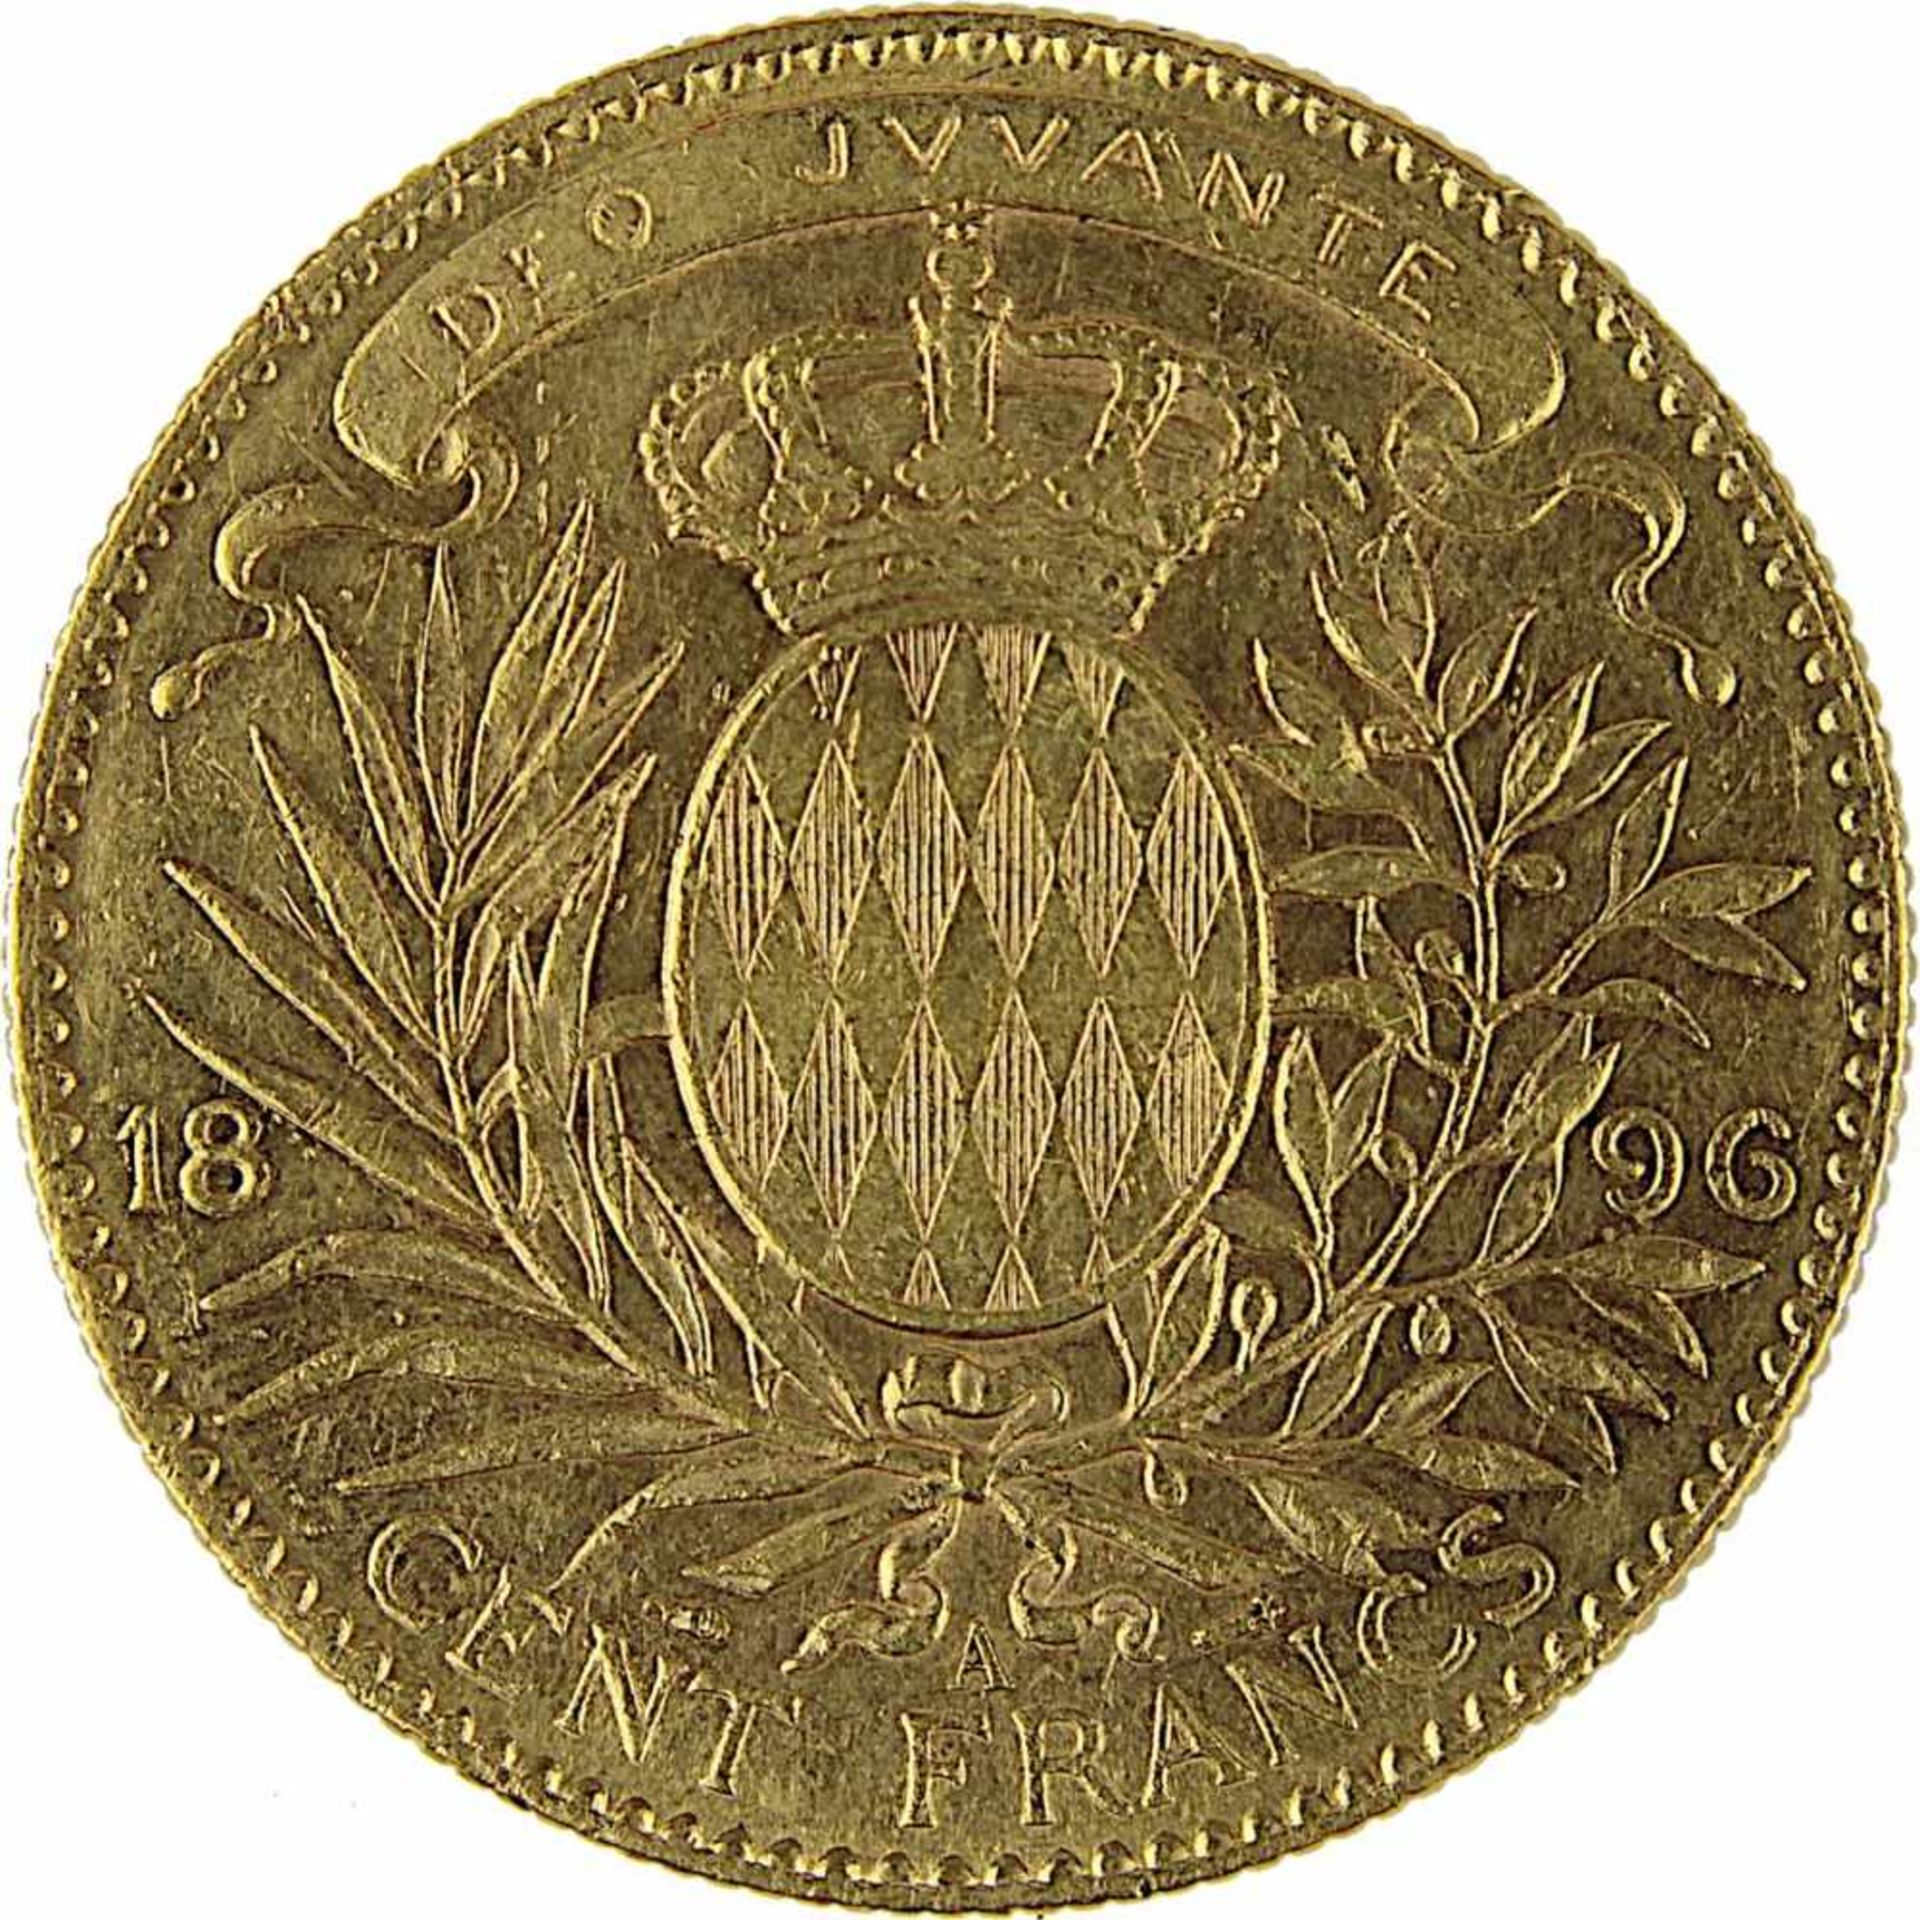 Goldmünze zu 100 Francs, Monaco 1896, A, 900er Gold, 32,2 g, Durchmesser 35 mm, Erhaltung sehr schön - Bild 3 aus 3